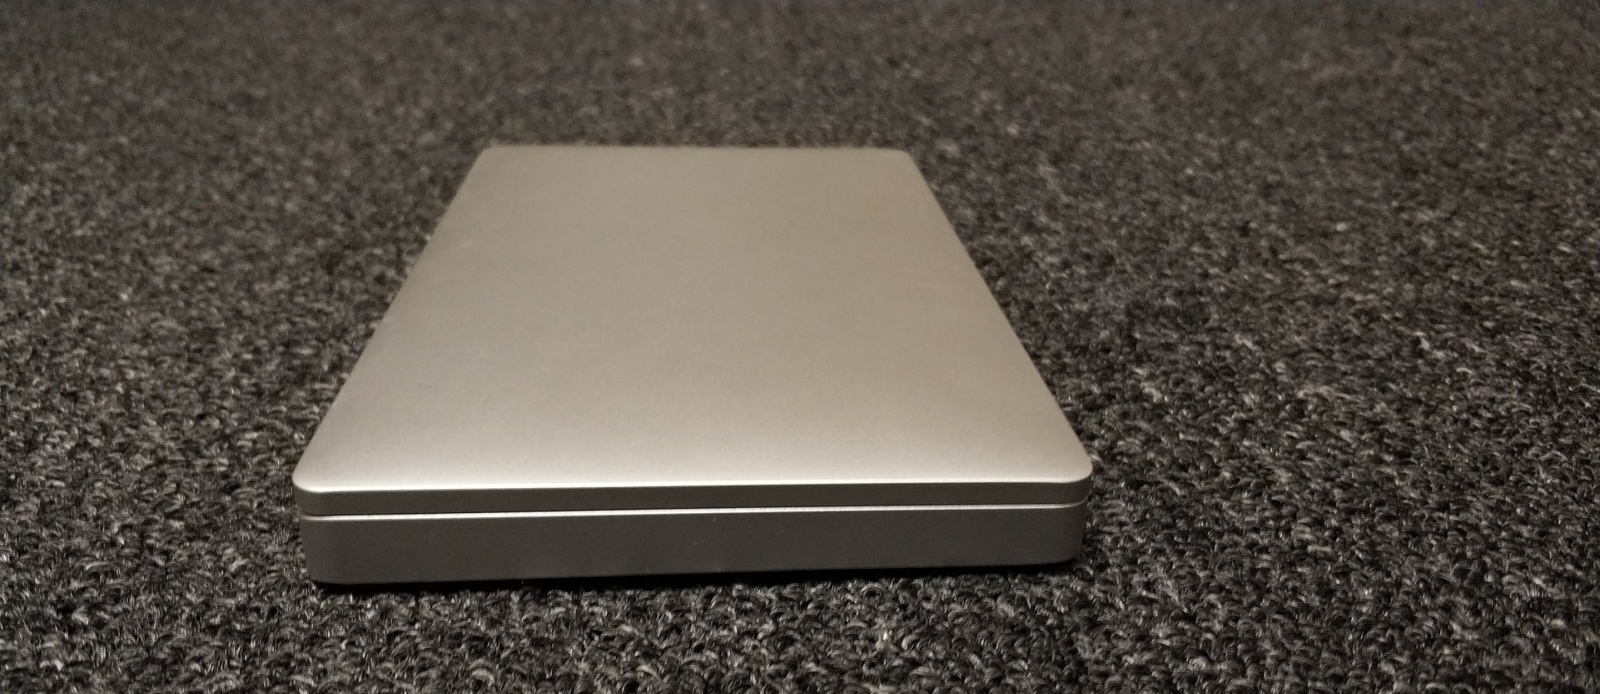 Обзор миниатюрного 7" ноутбук GPD Pocket. Рабочее место сисадмина-программиста в кармане куртки - 11